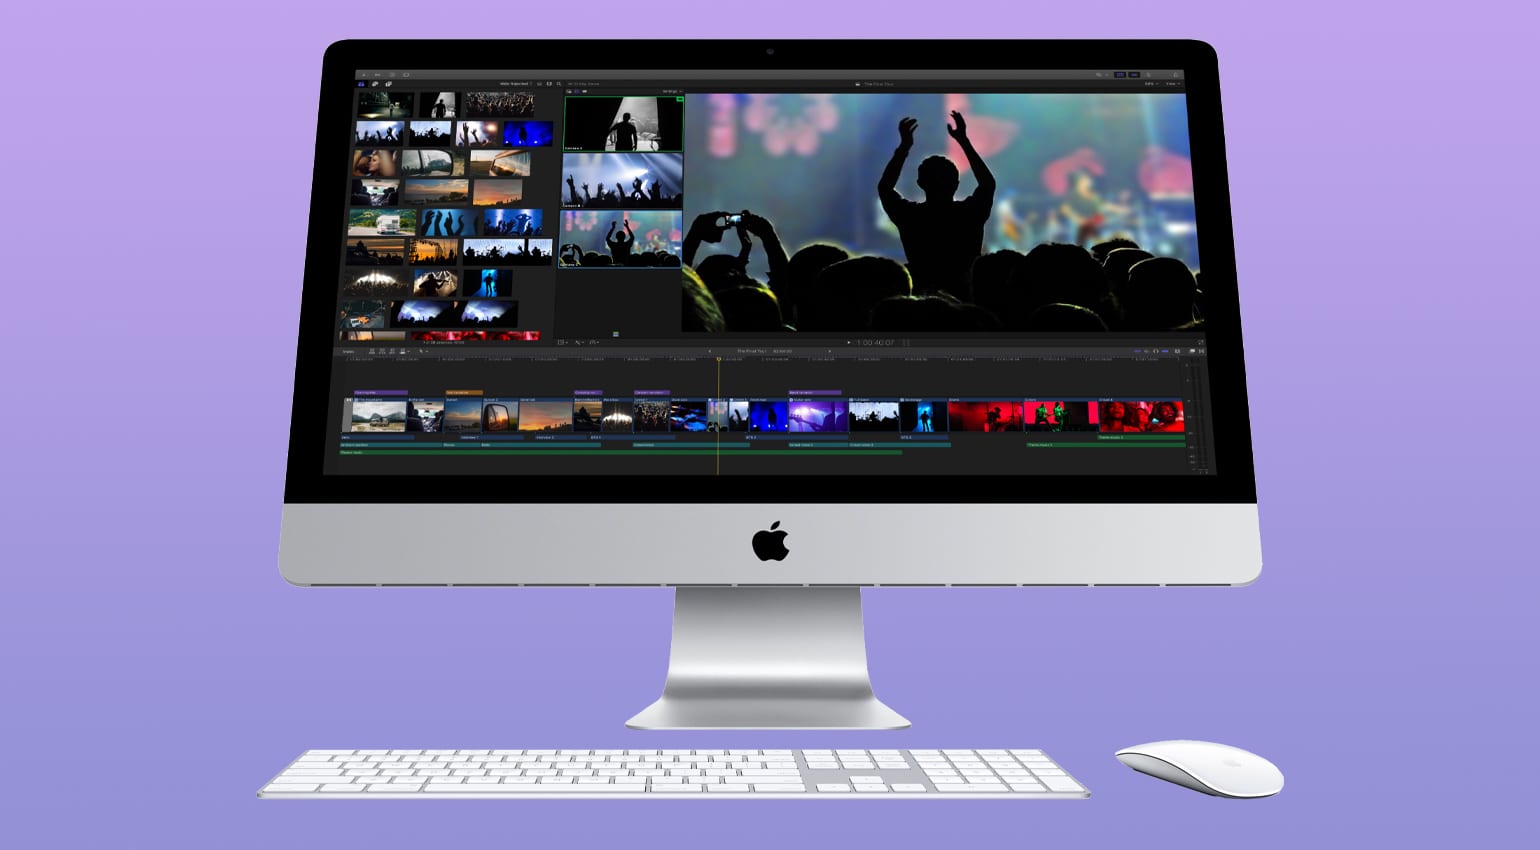 Selon les rumeurs, le nouvel iMac Pro 27 pouces serait doté d'un écran mini-LED